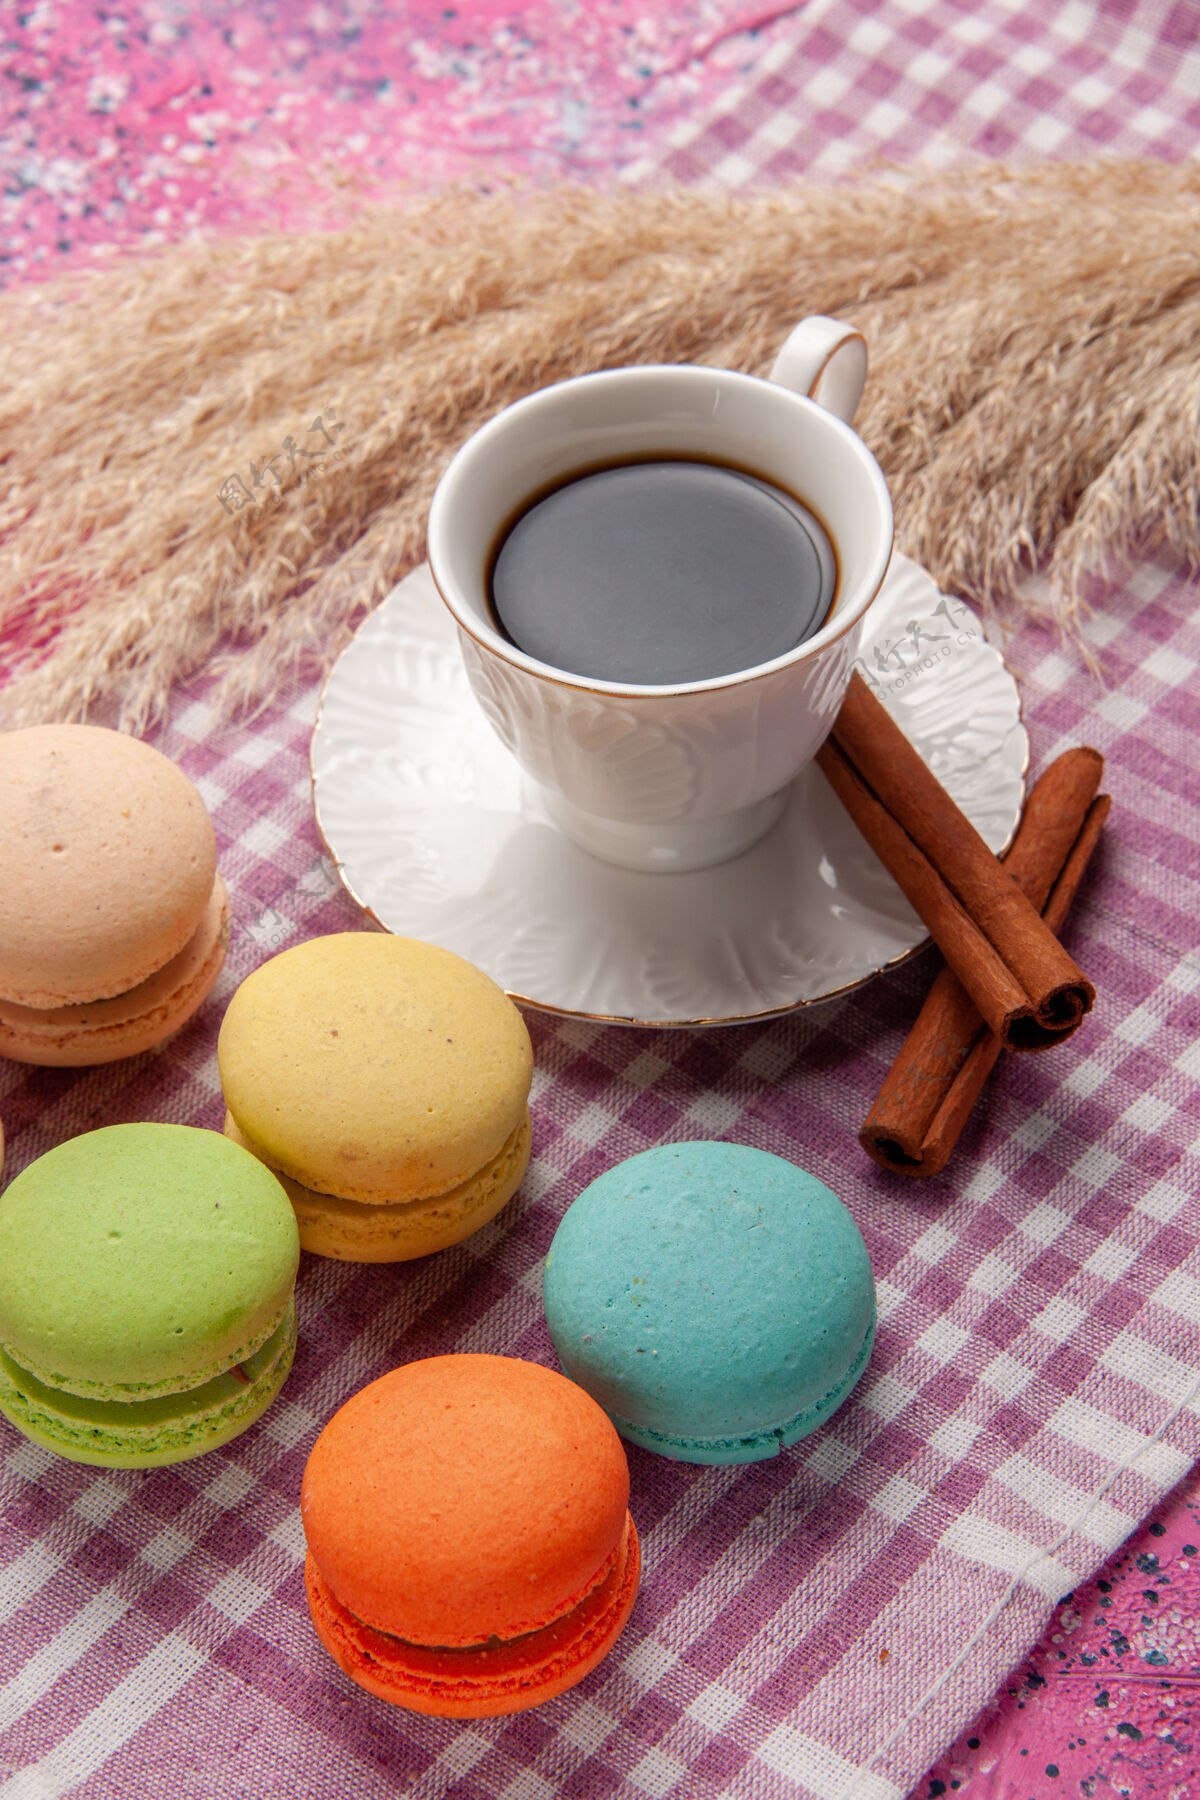 马卡龙一杯加肉桂和法式马卡龙的茶 放在粉红色的桌上蛋糕 饼干 甜甜的糖鸡蛋生的风景